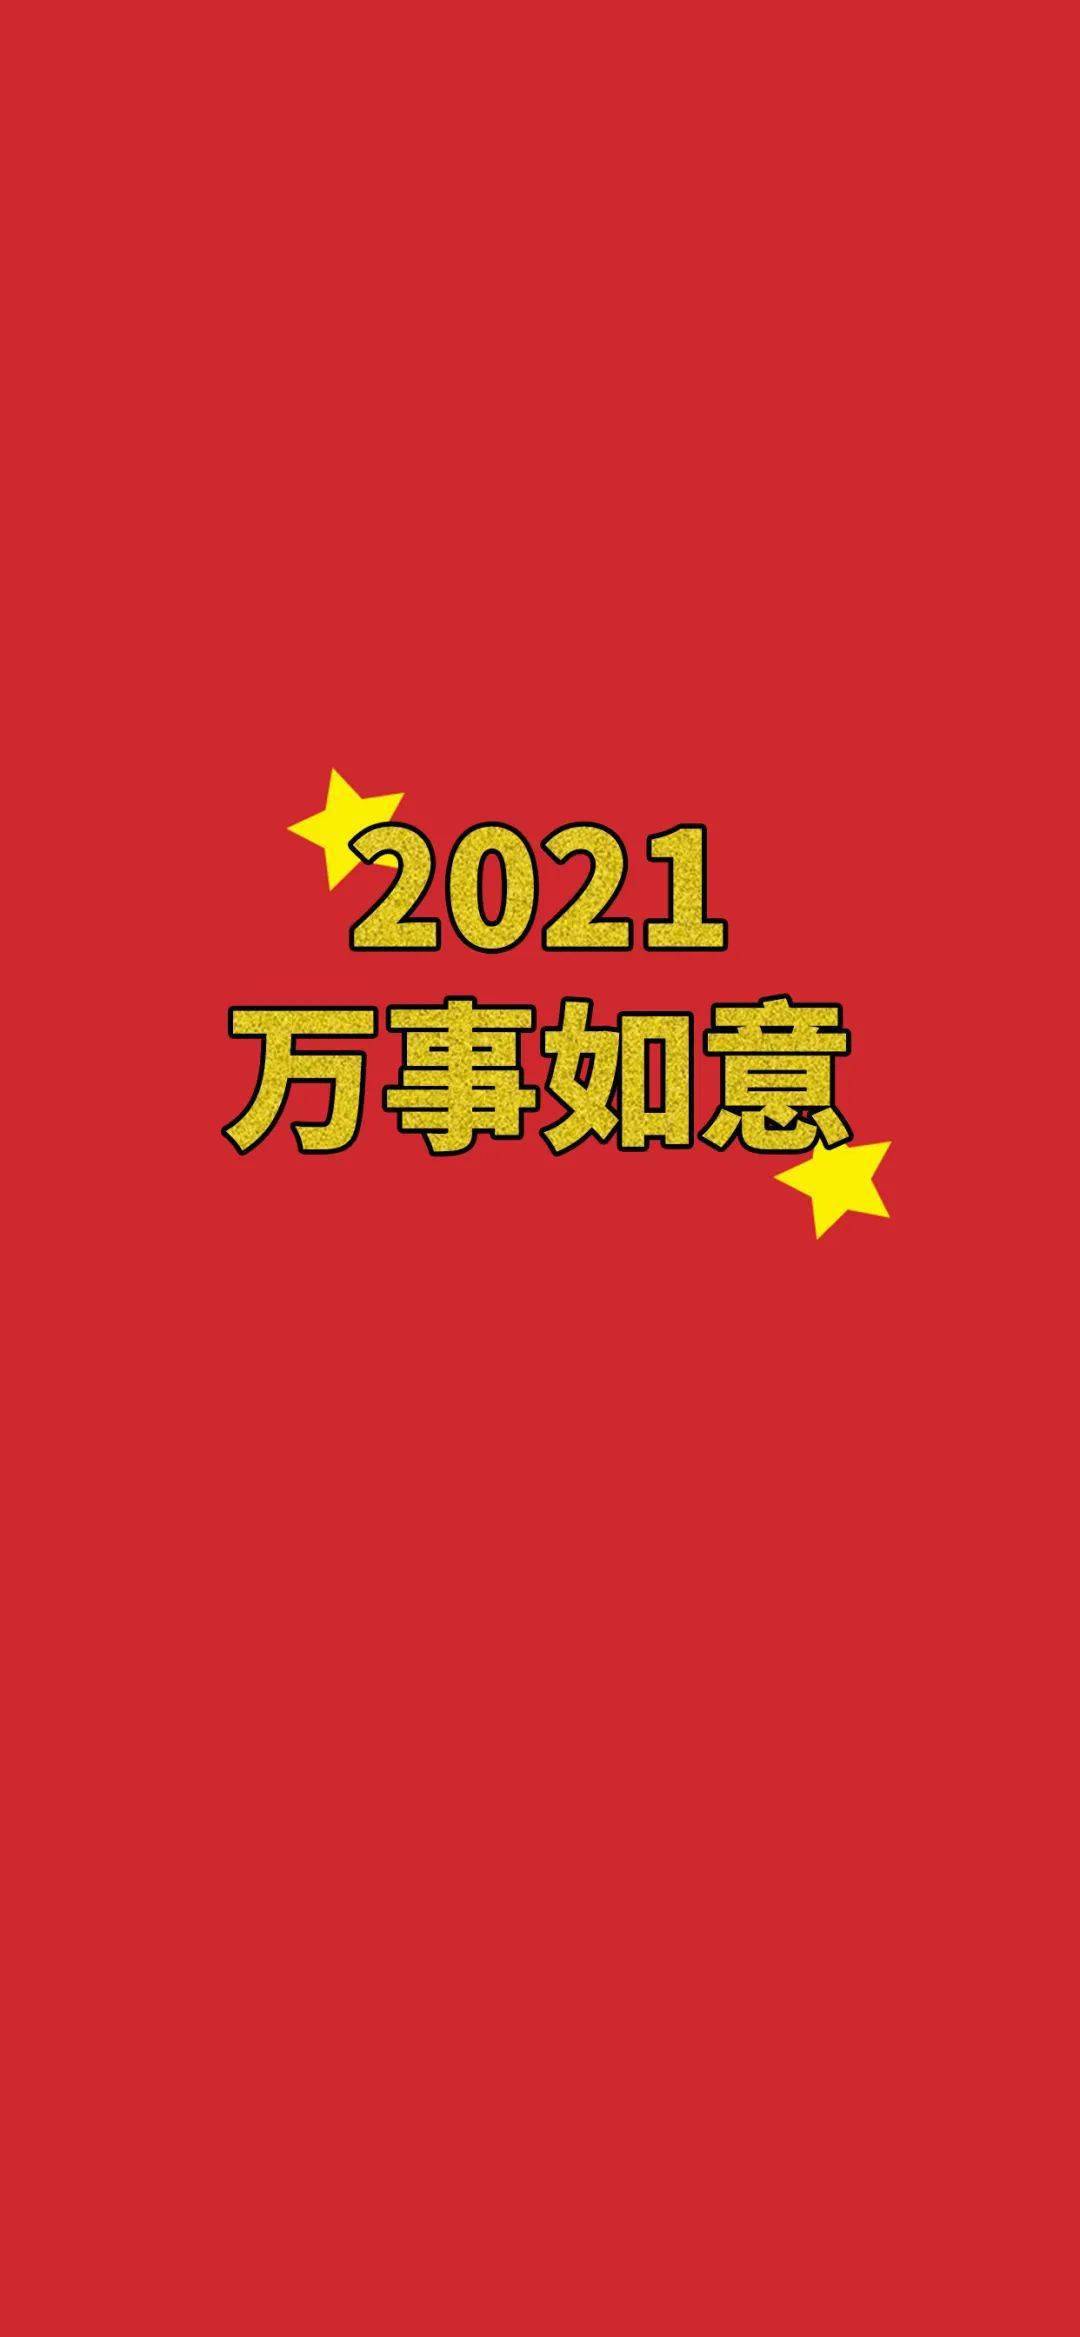 2021手机壁纸红色图片